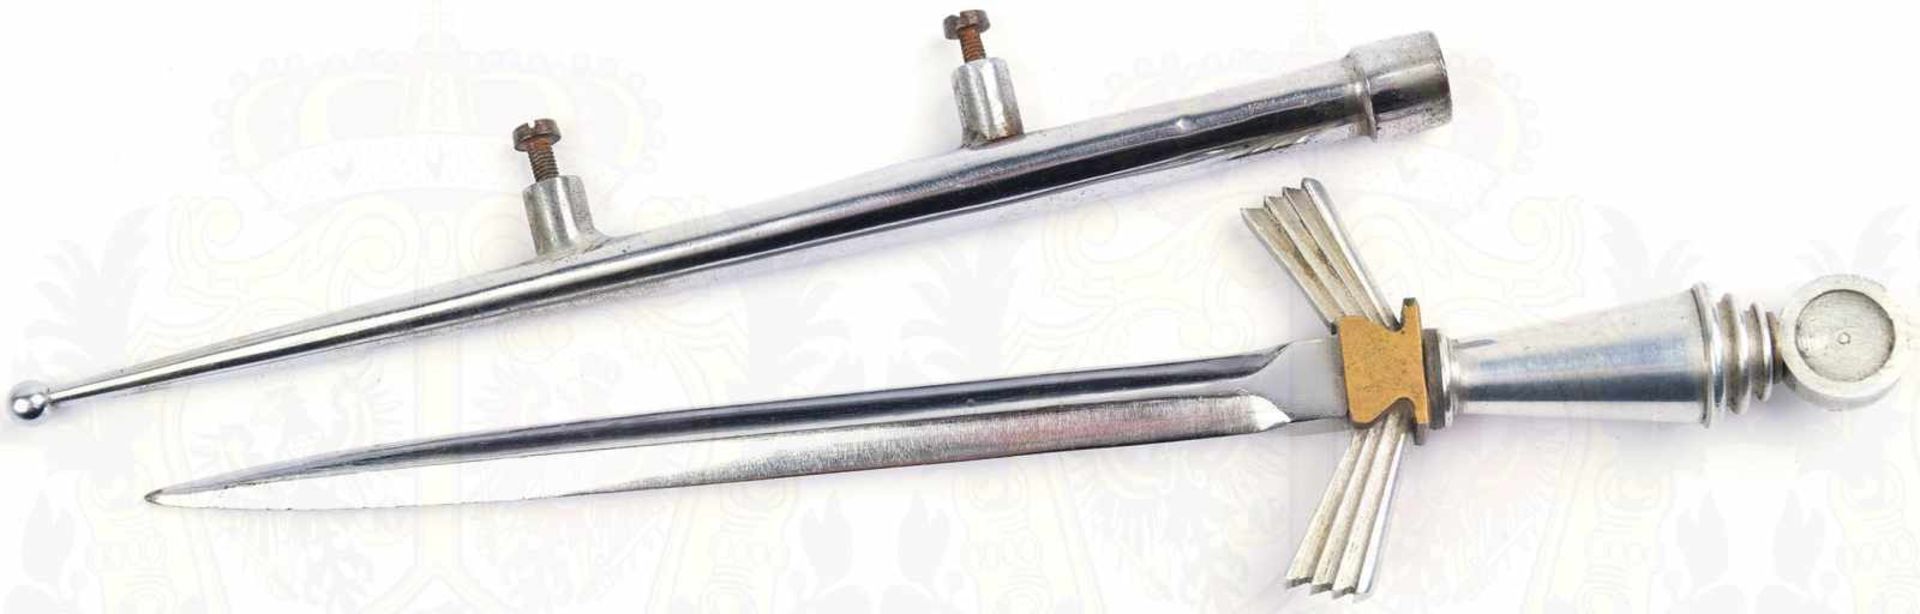 BRIEFÖFFNER, blanke zweischneidige Klinge, L. 14cm, Griffteile Weißmetall/Tombak, vernickelte